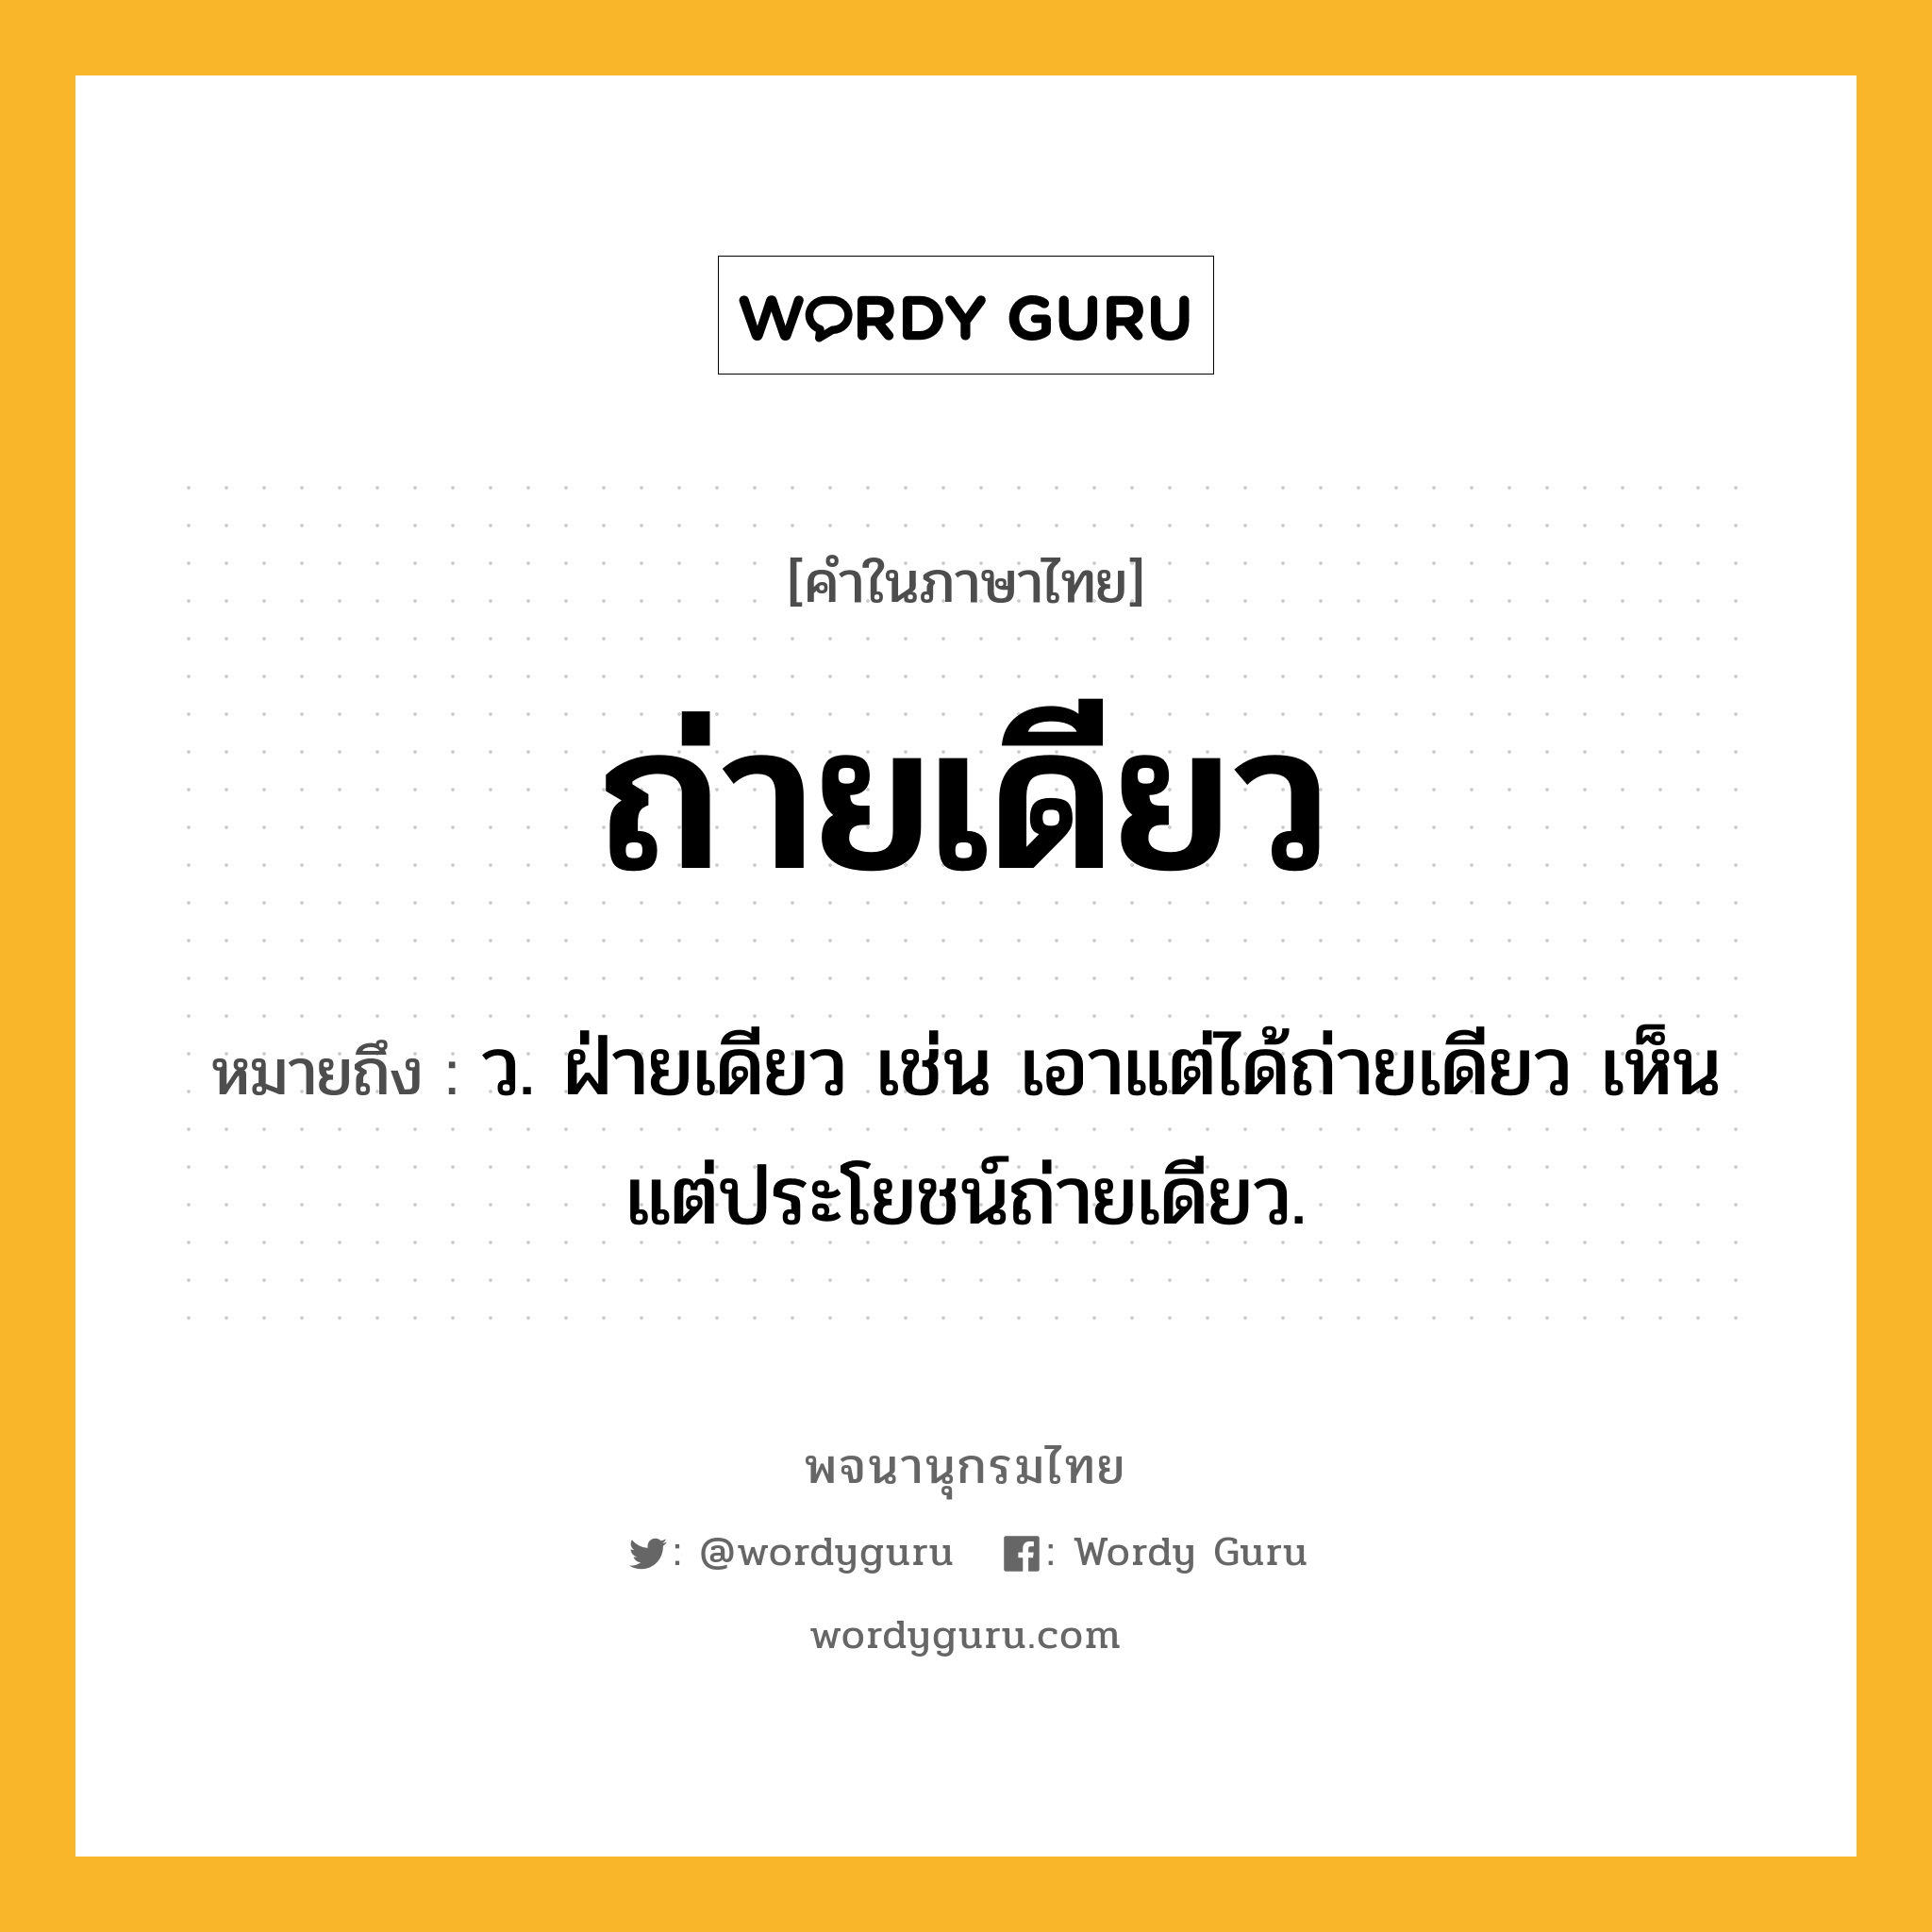 ถ่ายเดียว ความหมาย หมายถึงอะไร?, คำในภาษาไทย ถ่ายเดียว หมายถึง ว. ฝ่ายเดียว เช่น เอาแต่ได้ถ่ายเดียว เห็นแต่ประโยชน์ถ่ายเดียว.